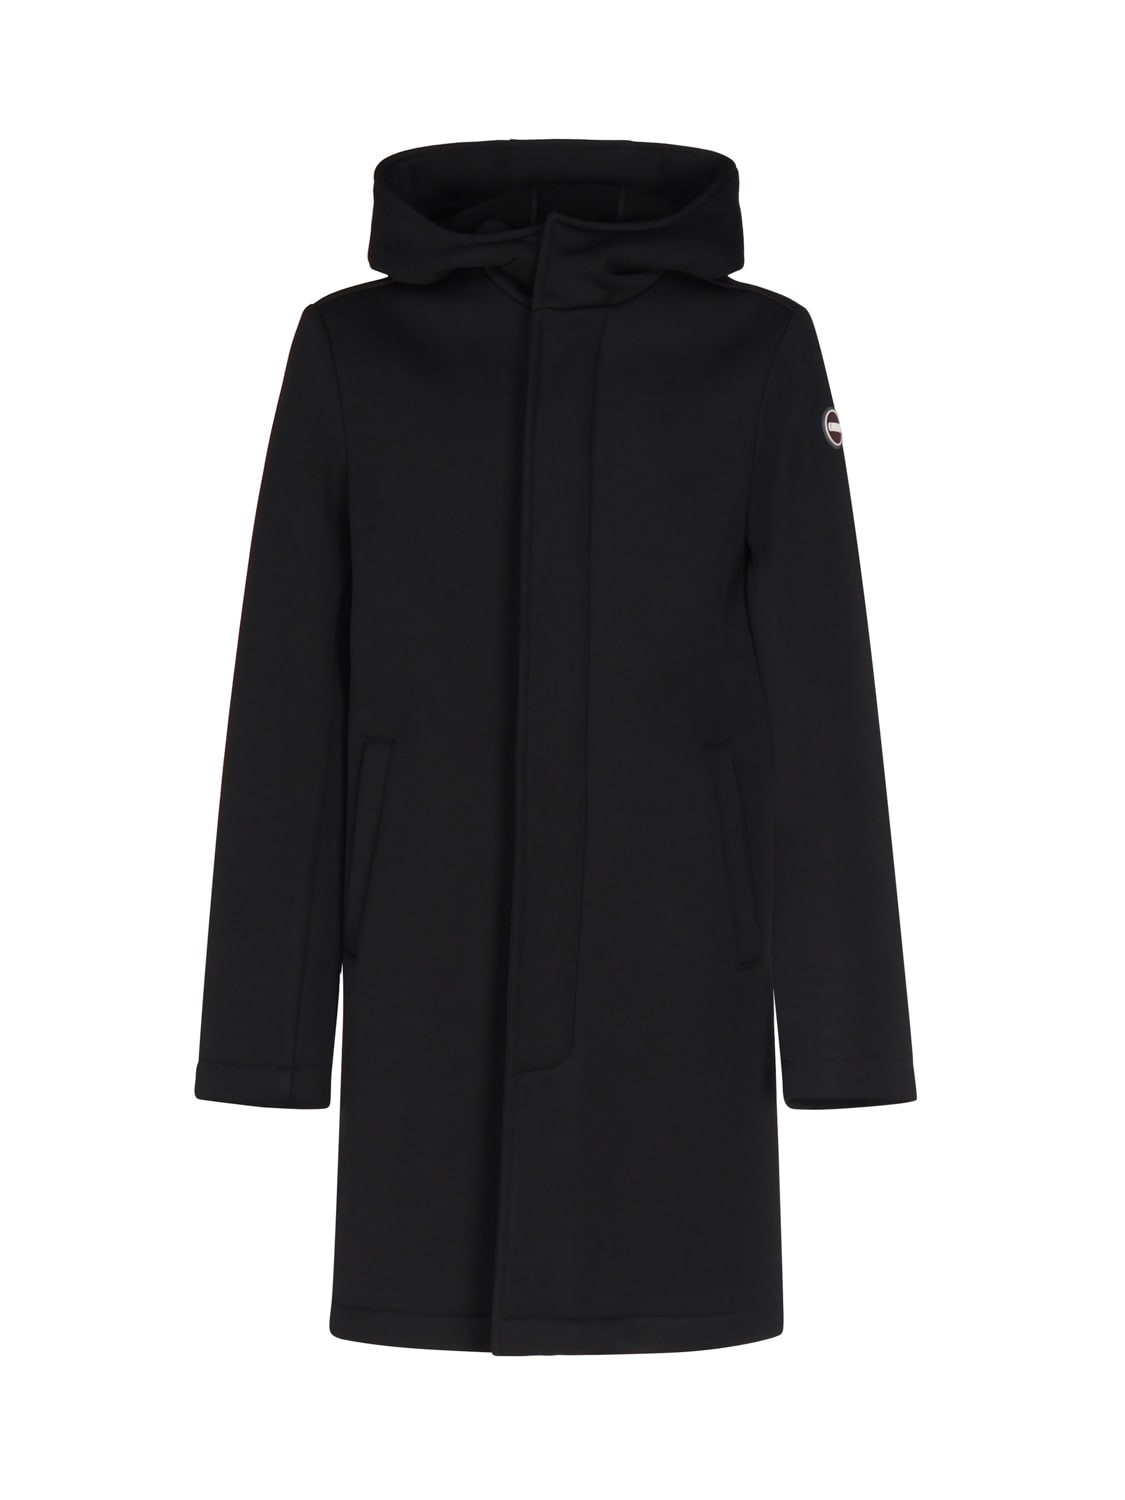 Colmar Wool Jacket With Hood In Black